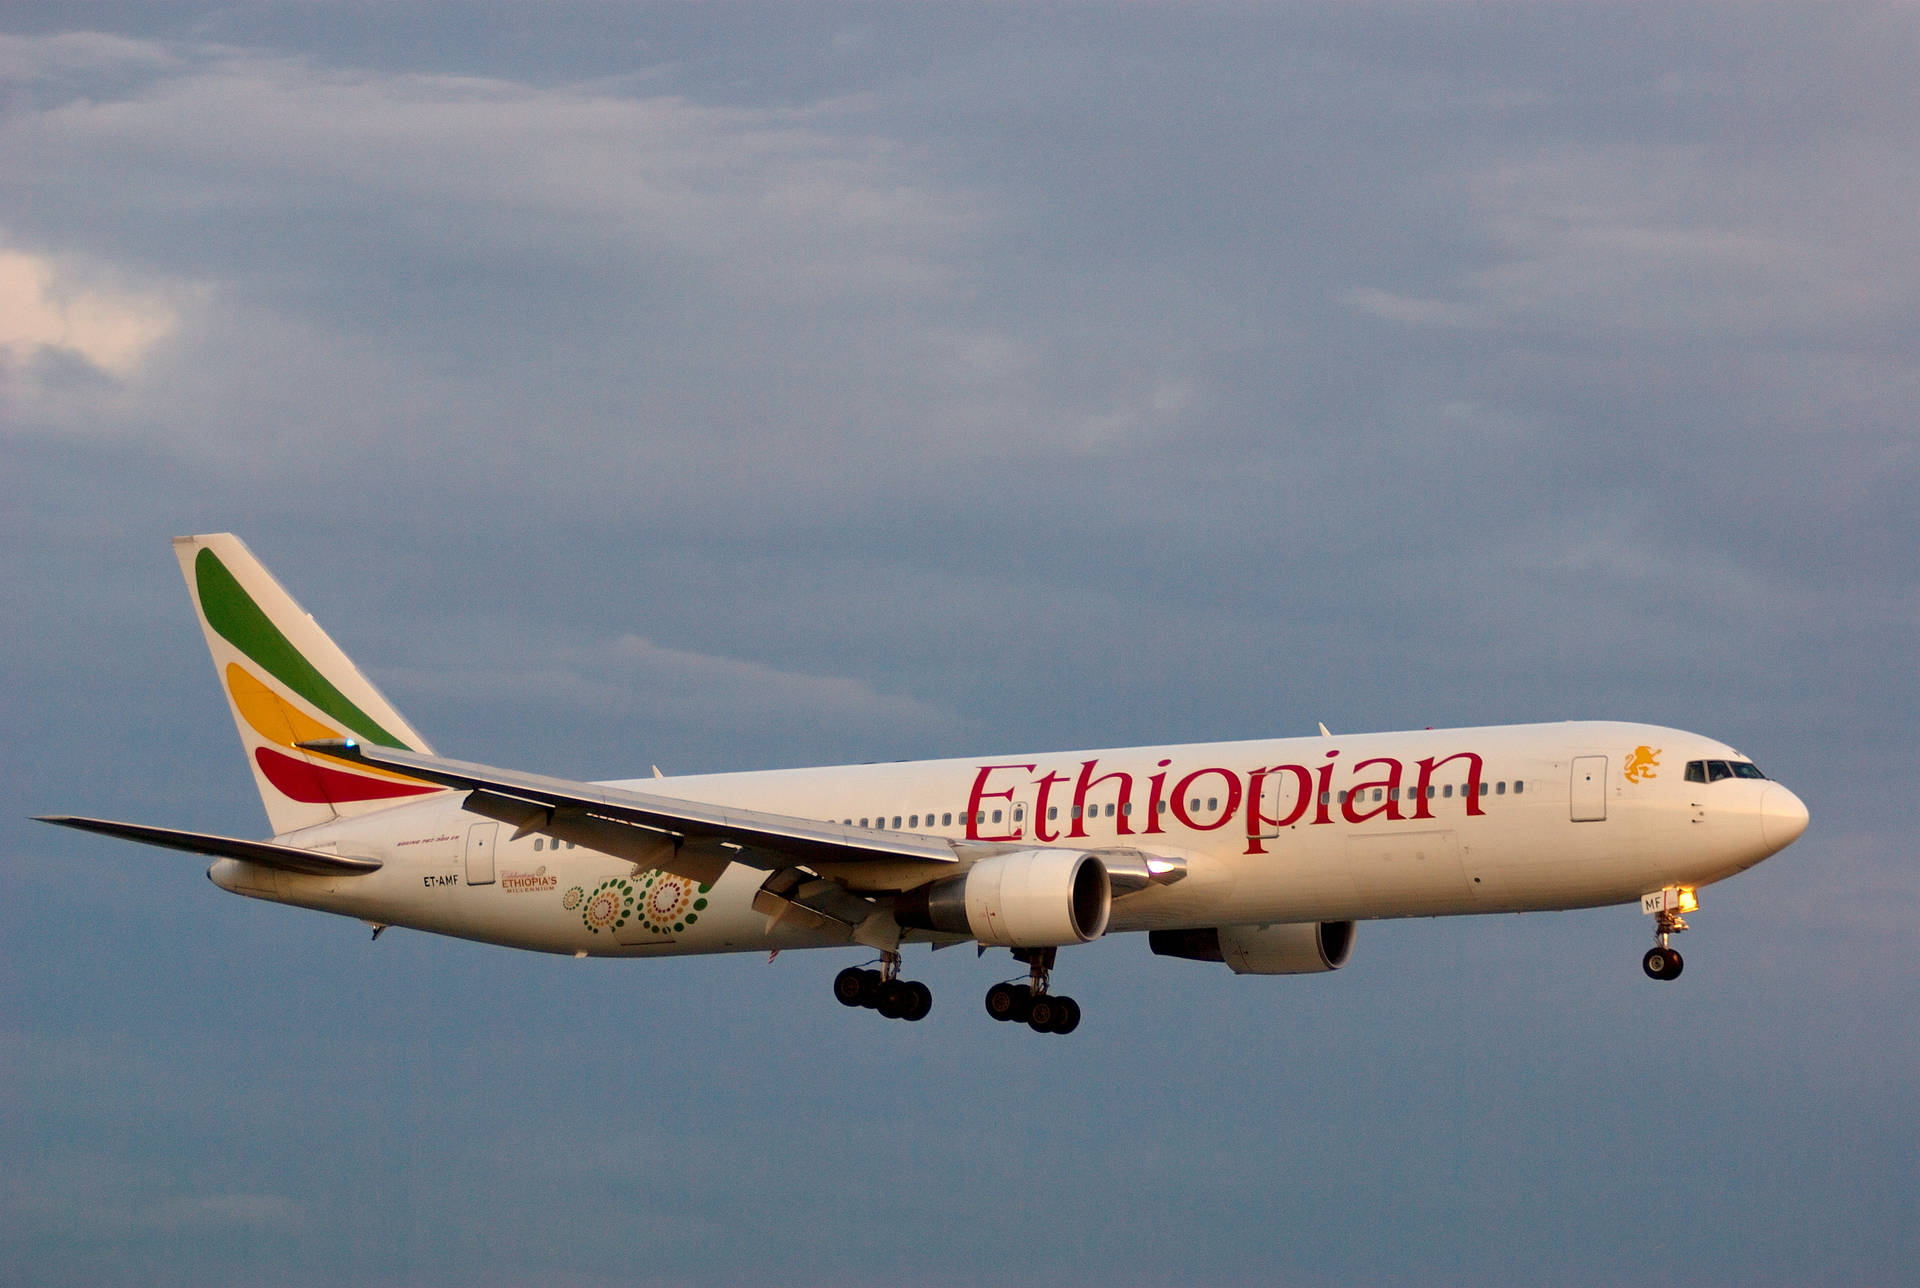 Ethiopian Airlines giver en flyvemaskine lindring sikkerhedsbaggrund Wallpaper